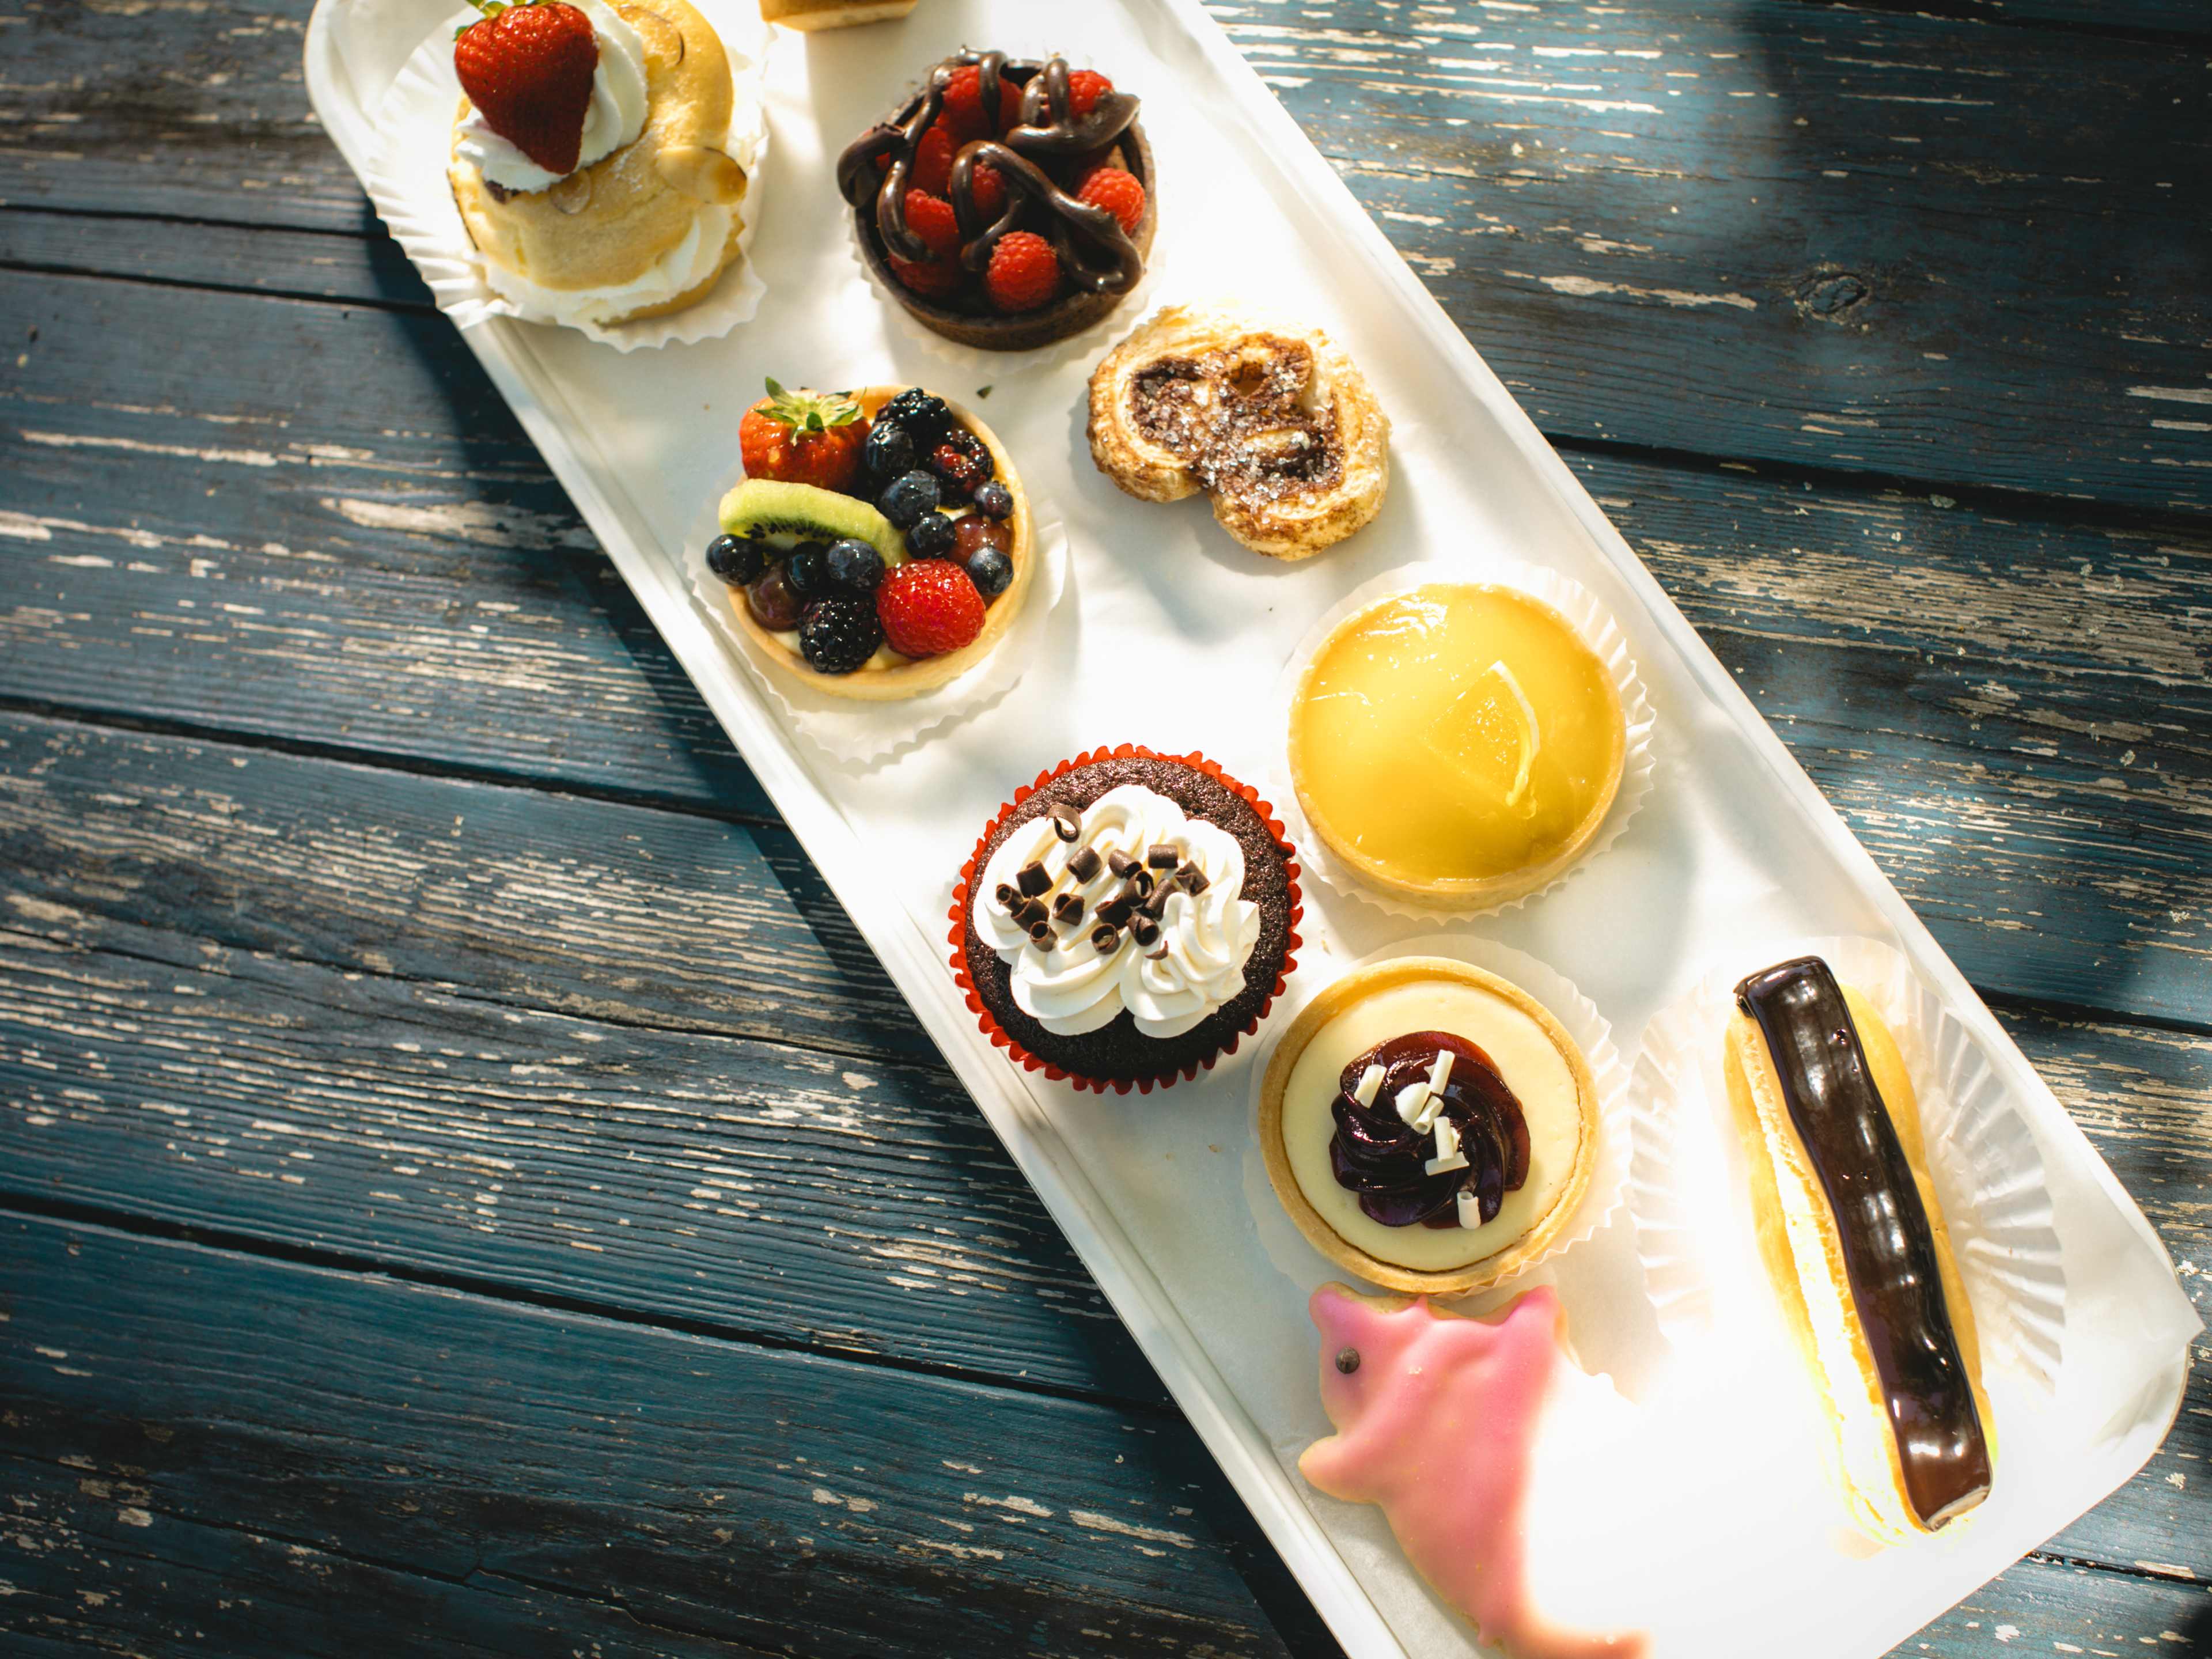 An overhead shot of various desserts